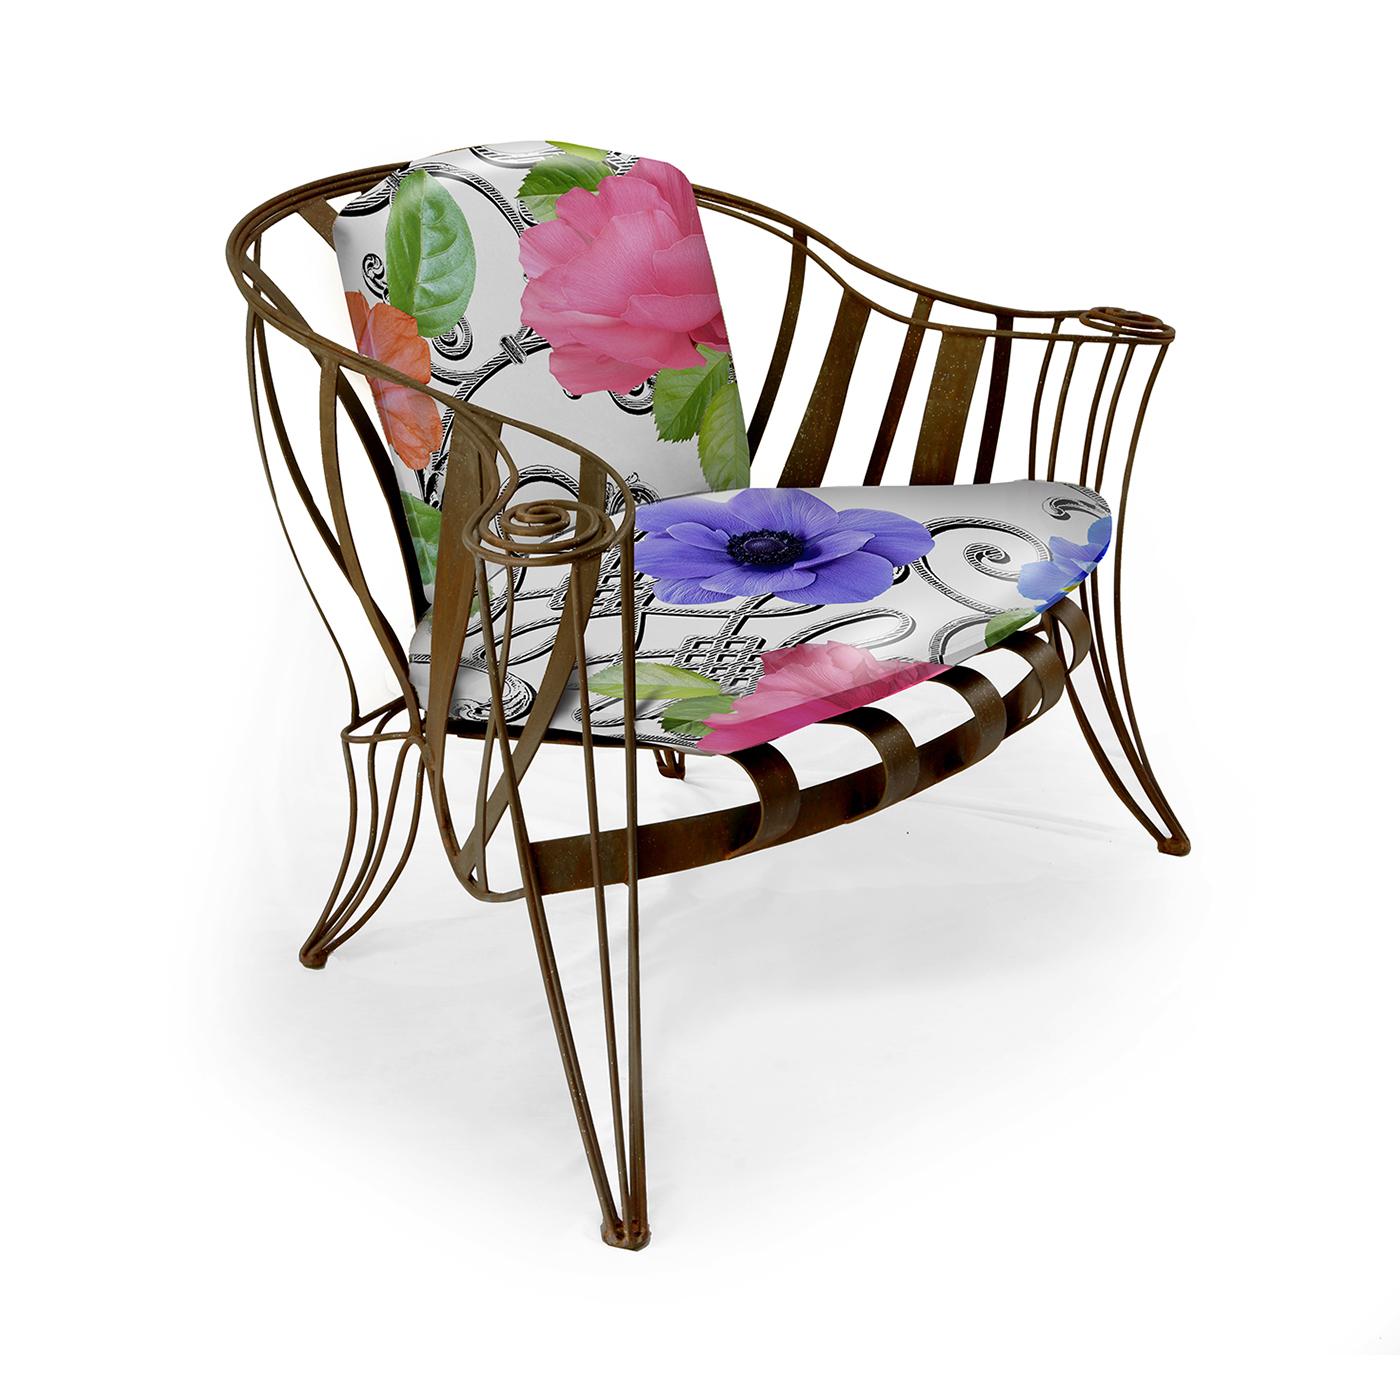 Wir stellen den opulenten Sessel Opus Garden White Flower vor, ein Designerstück von Carlo Rampazzi. Dieses außergewöhnliche Stück besteht aus einem kunstvoll von Hand gebogenen Eisenrahmen, der sorgfältig mit Rostschutz behandelt wurde. Um den